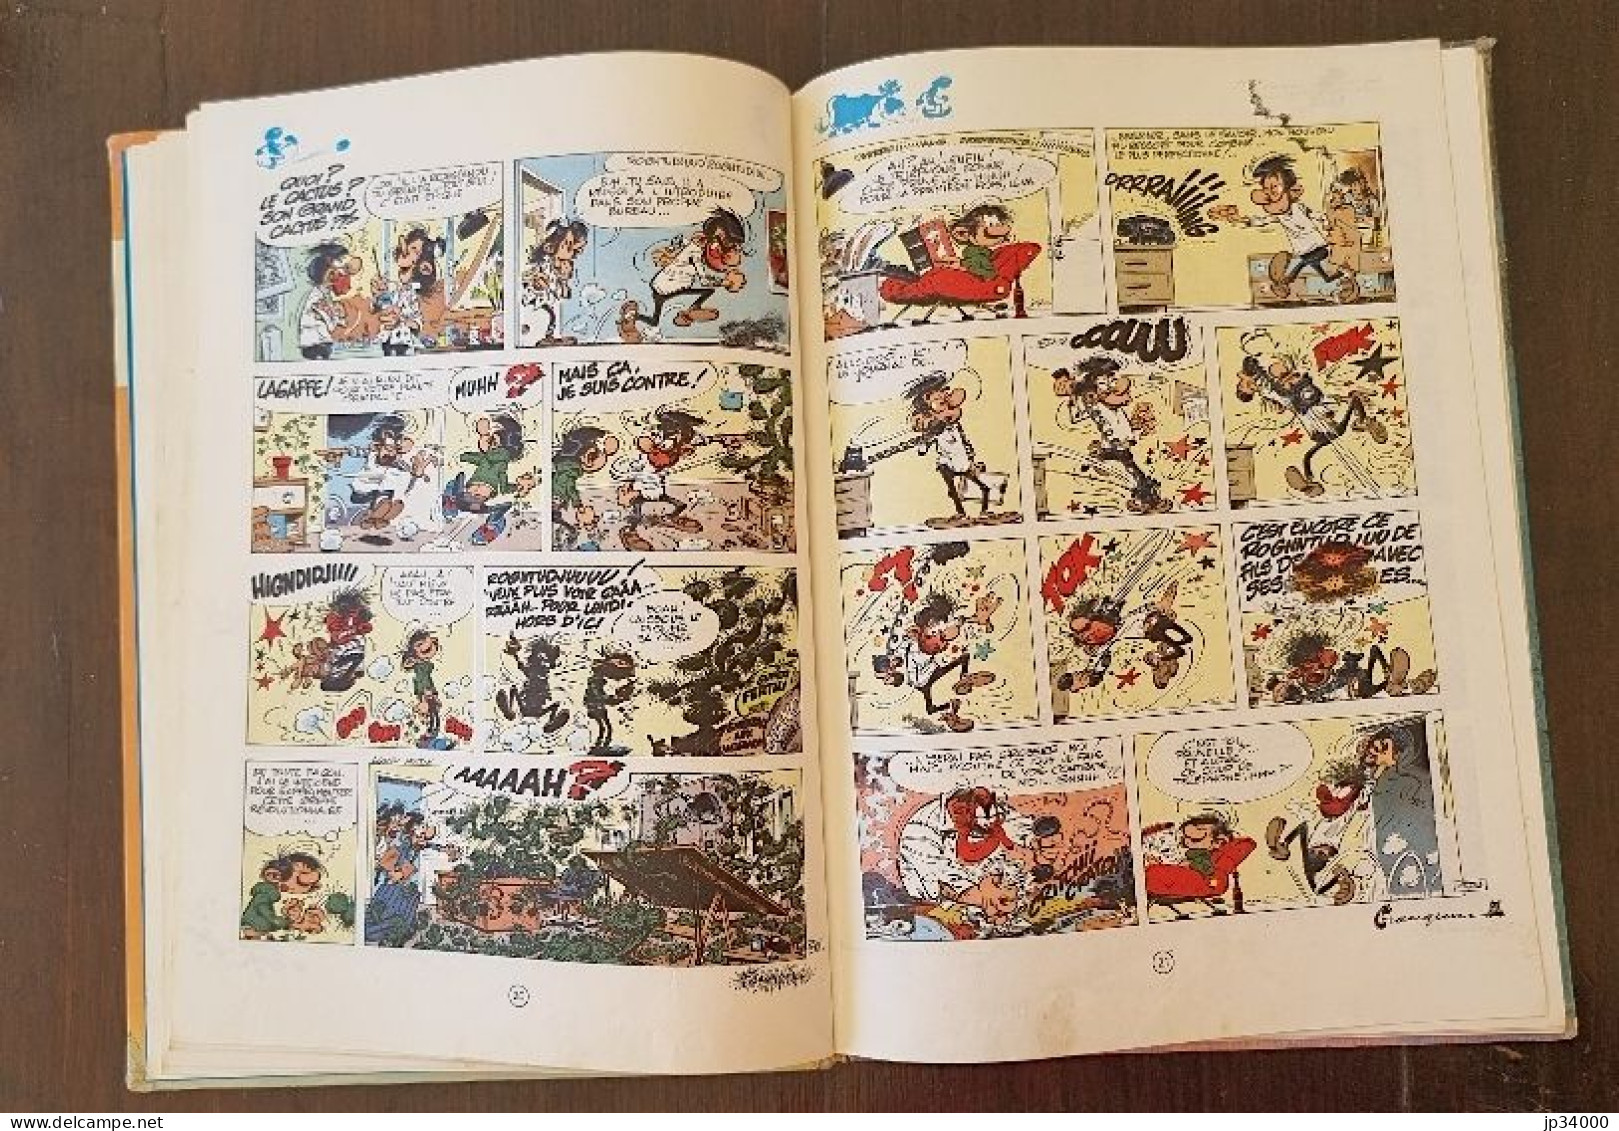 GASTON LAGAFFE le géant de la gaffe N°10. Dos rond. Editions Dupuis. 1974